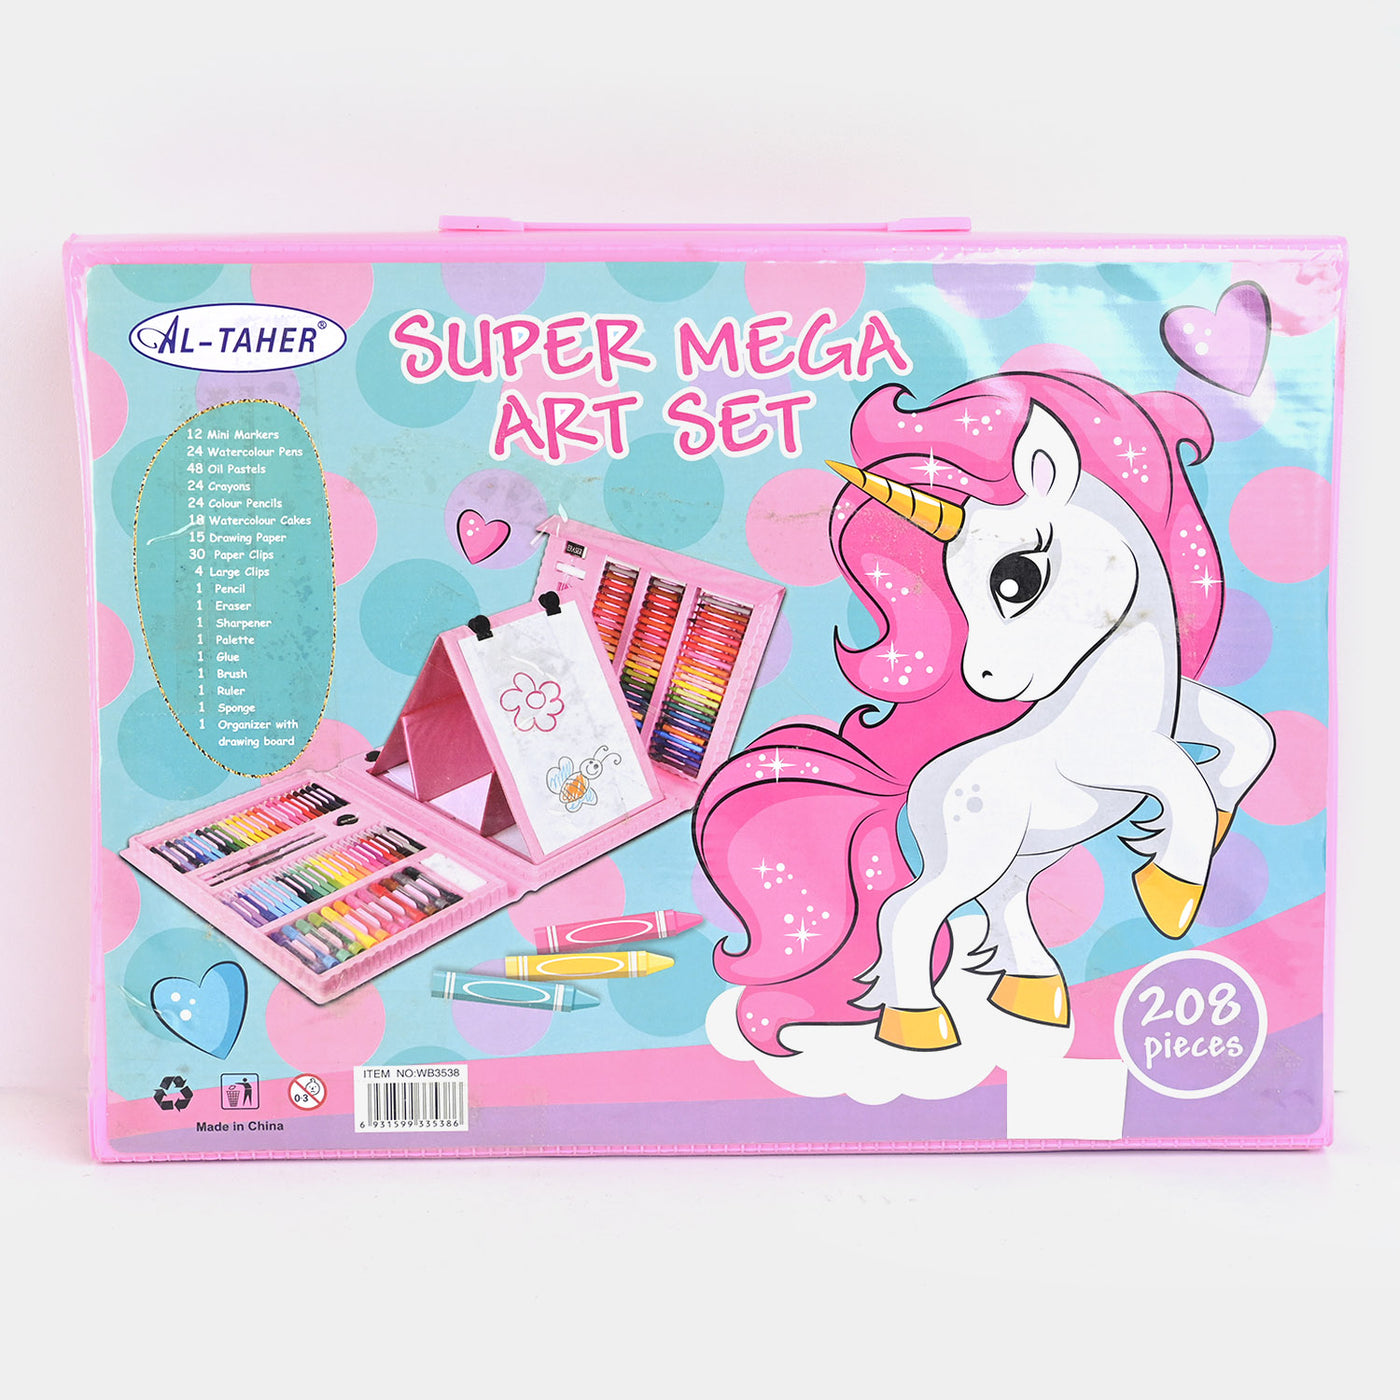 Super Mega Art Color Kit | 208PCs